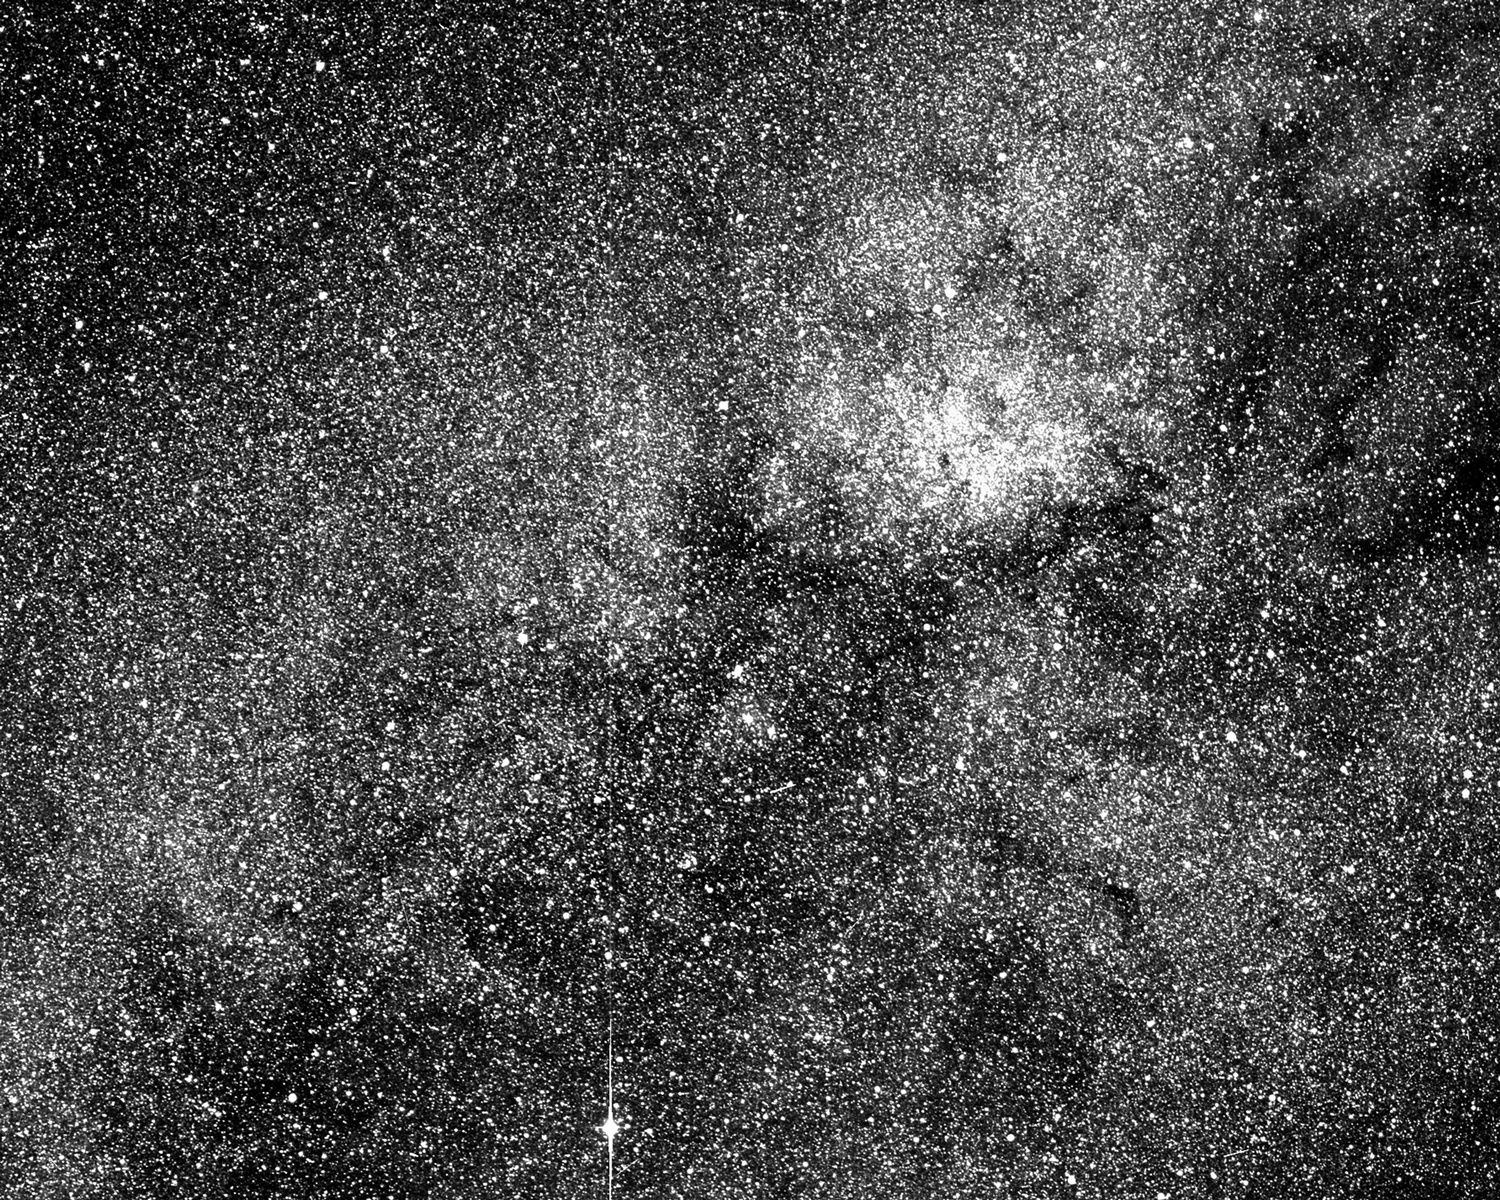 Novo caçador de planetas da Nasa manda foto com mais de 200 mil estrelas Nasa-tess-18174248097131